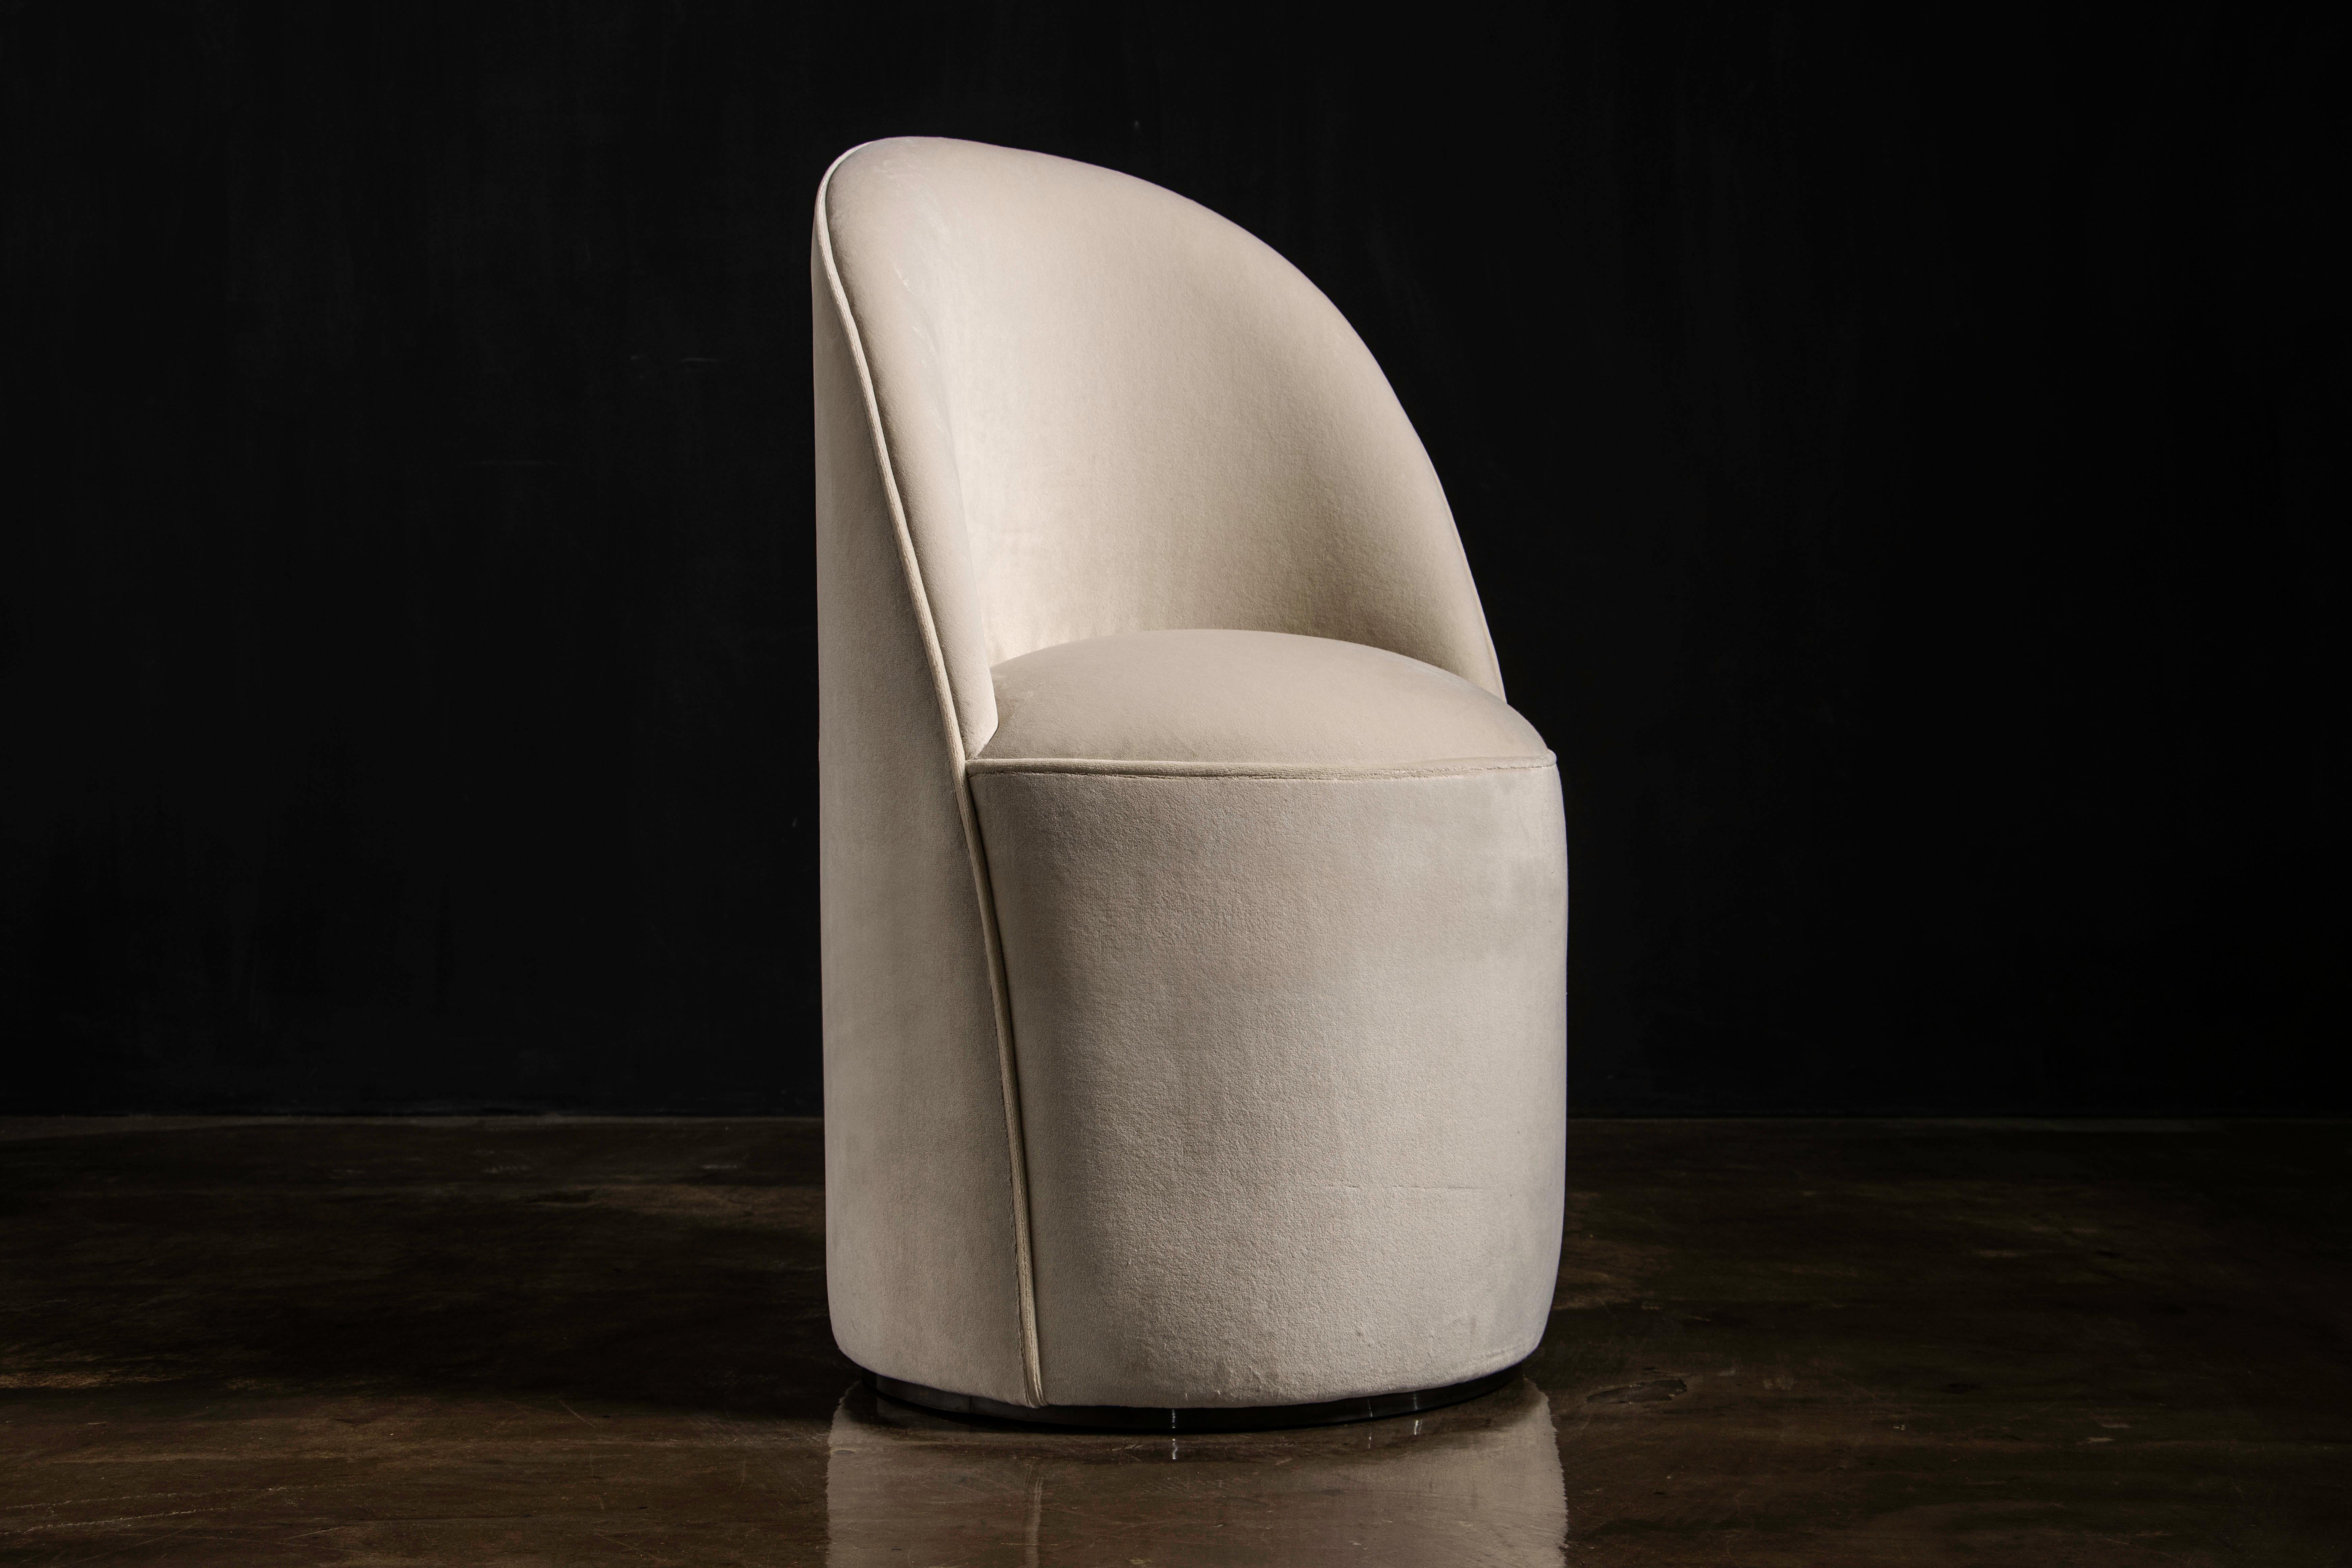 Elisabetta Moderner drehbarer Frisierstuhl in Stoff oder Leder von Costantini

Dieser elegante, moderne und doch zeitlose Frisierstuhl ist drehbar und kann mit dem Material Ihrer Wahl bezogen werden.  Wählen Sie zwischen Standard-Stoff, Leder,